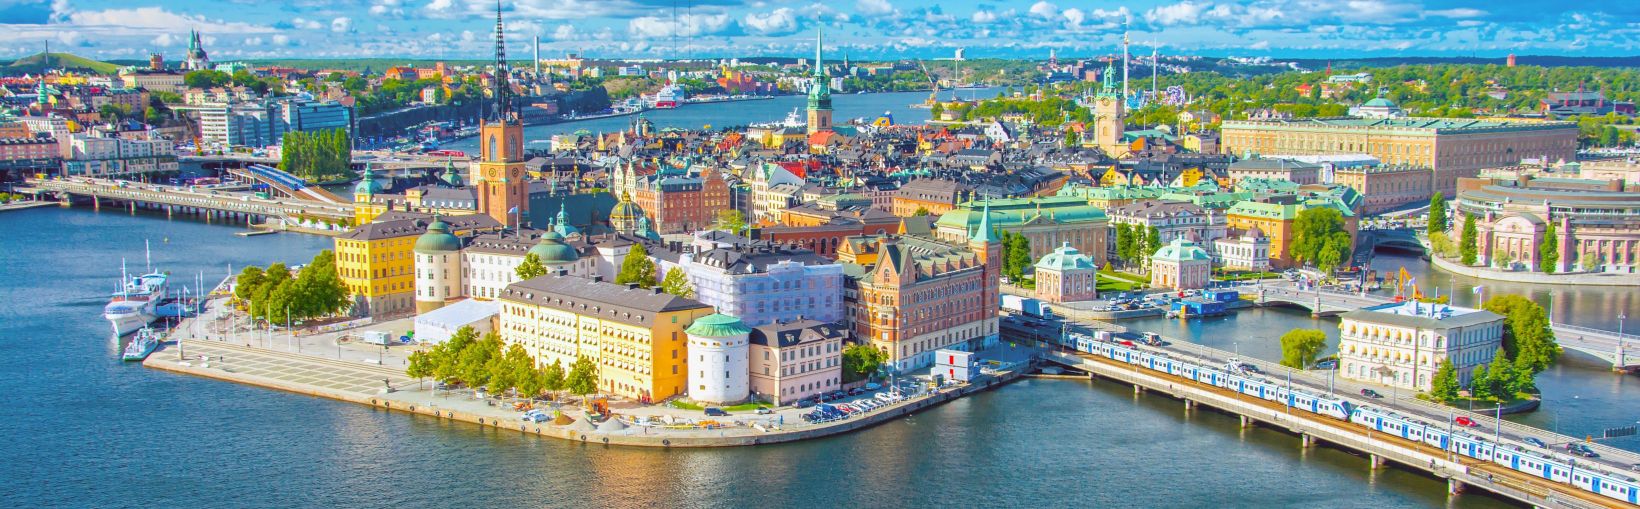 Panoraamanäkymä Keski-Tukholman silloista ja rakennuksista sekä yhdistelmästä perinteisiä ja moderneja rakennuksia ja korkeita torneja, joita kaikkia ympäröi vesi ja matalat kukkulat aurinkoisena päivänä.